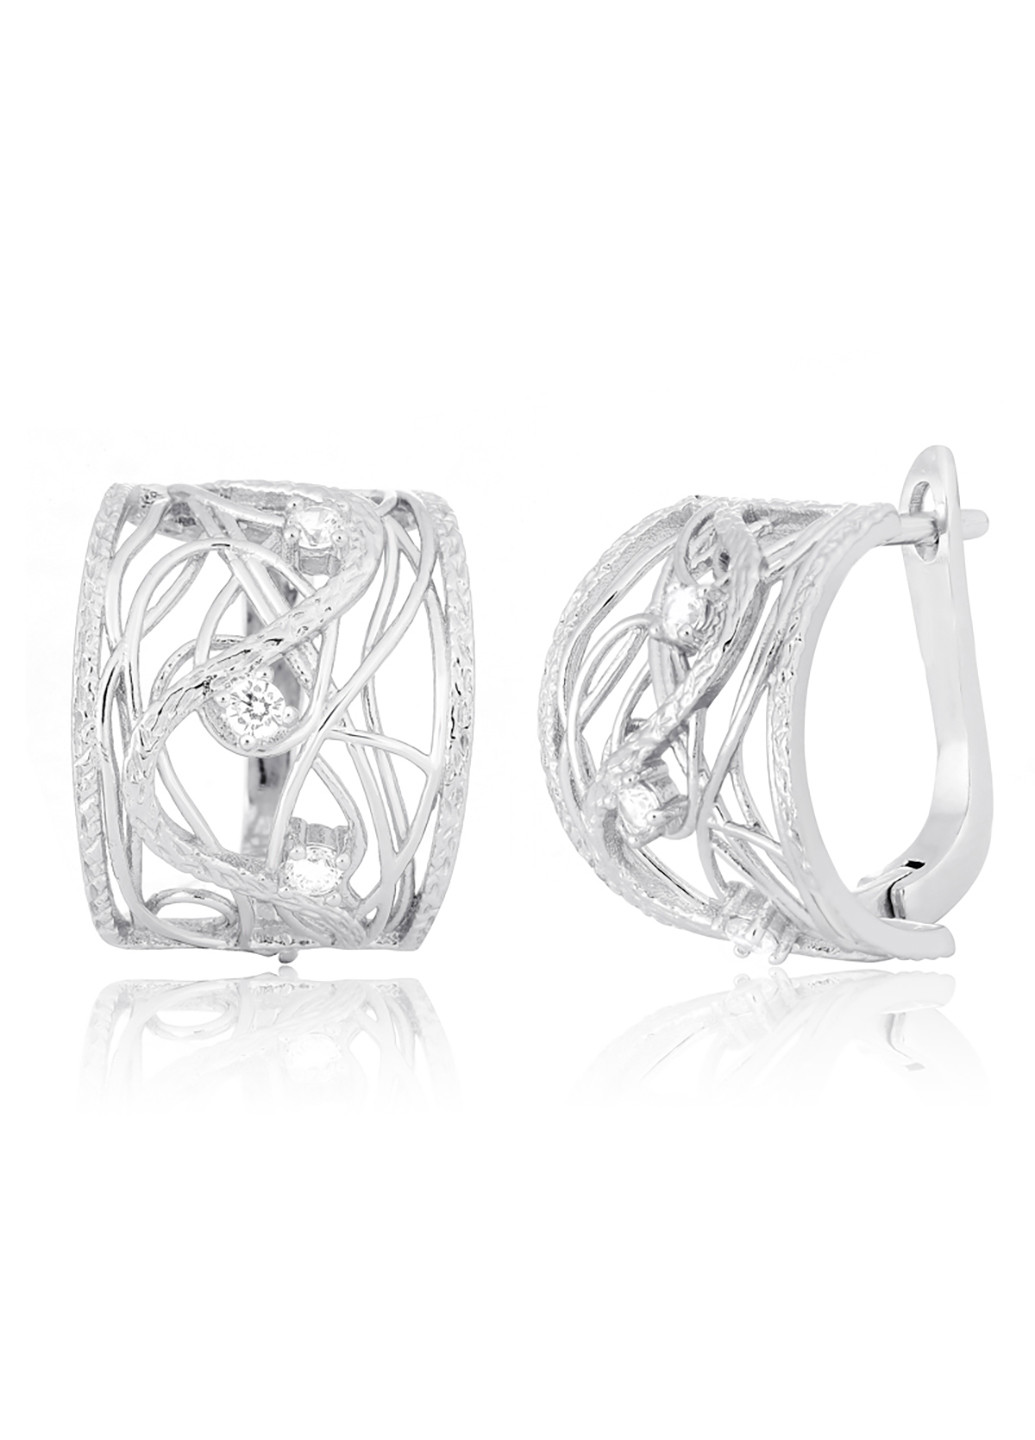 Срібні сережки з фіанітами ск2ф / 256 Silvex925 (201169615)